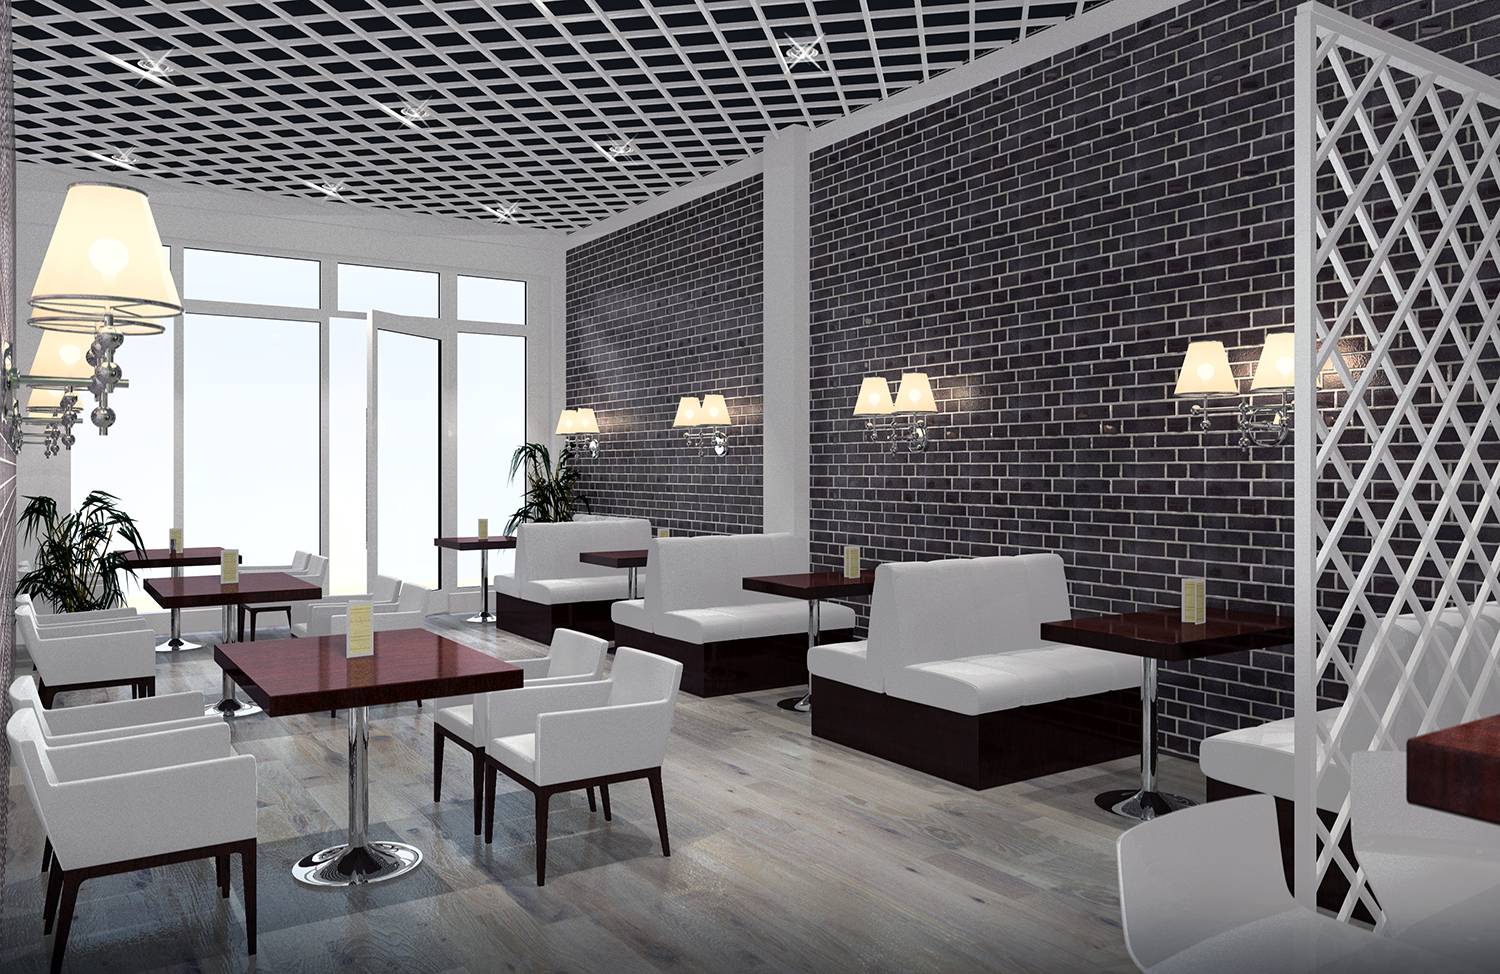 Environment-Staging der Einrichtung von Kafeteria als 3D Innenraum-Architekturvisualisierung für Gastronomie-Unternehmer in Hamburg. Erstellt im Jahre 2021.